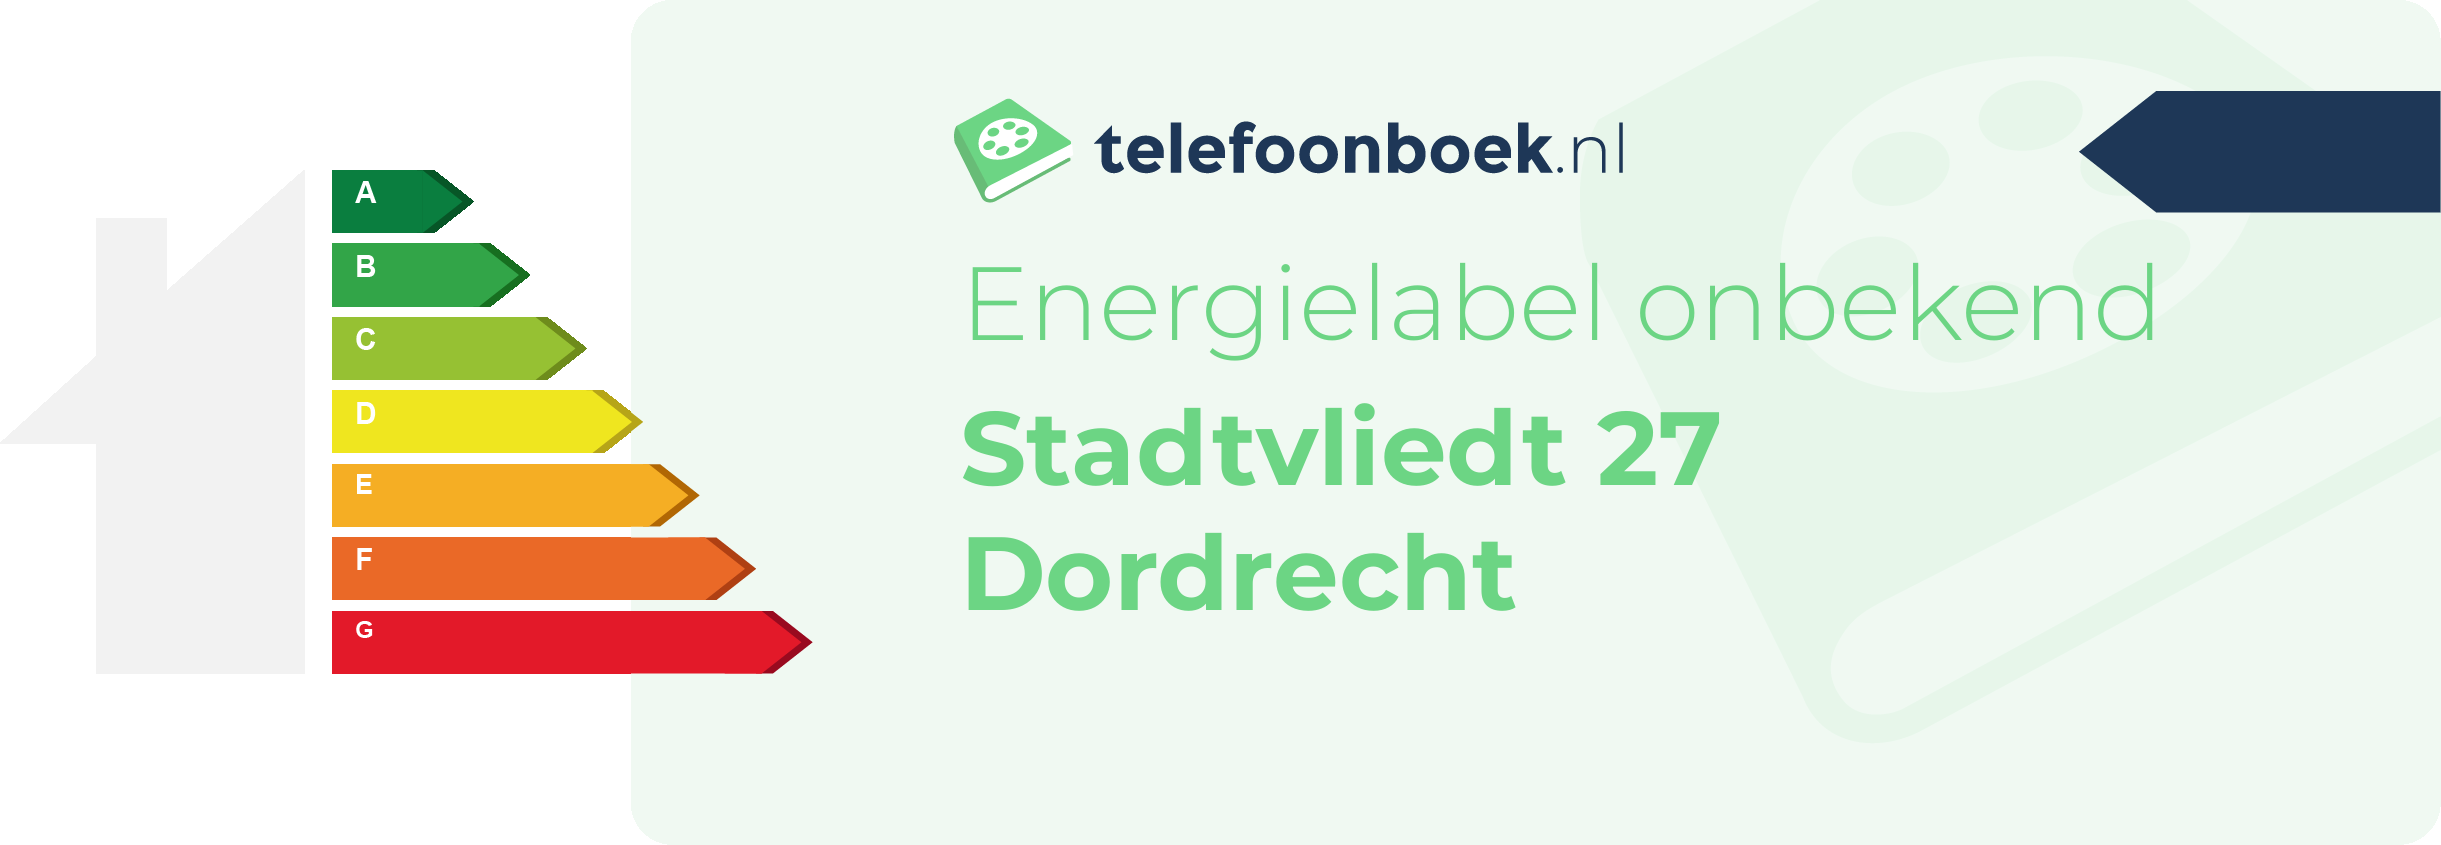 Energielabel Stadtvliedt 27 Dordrecht